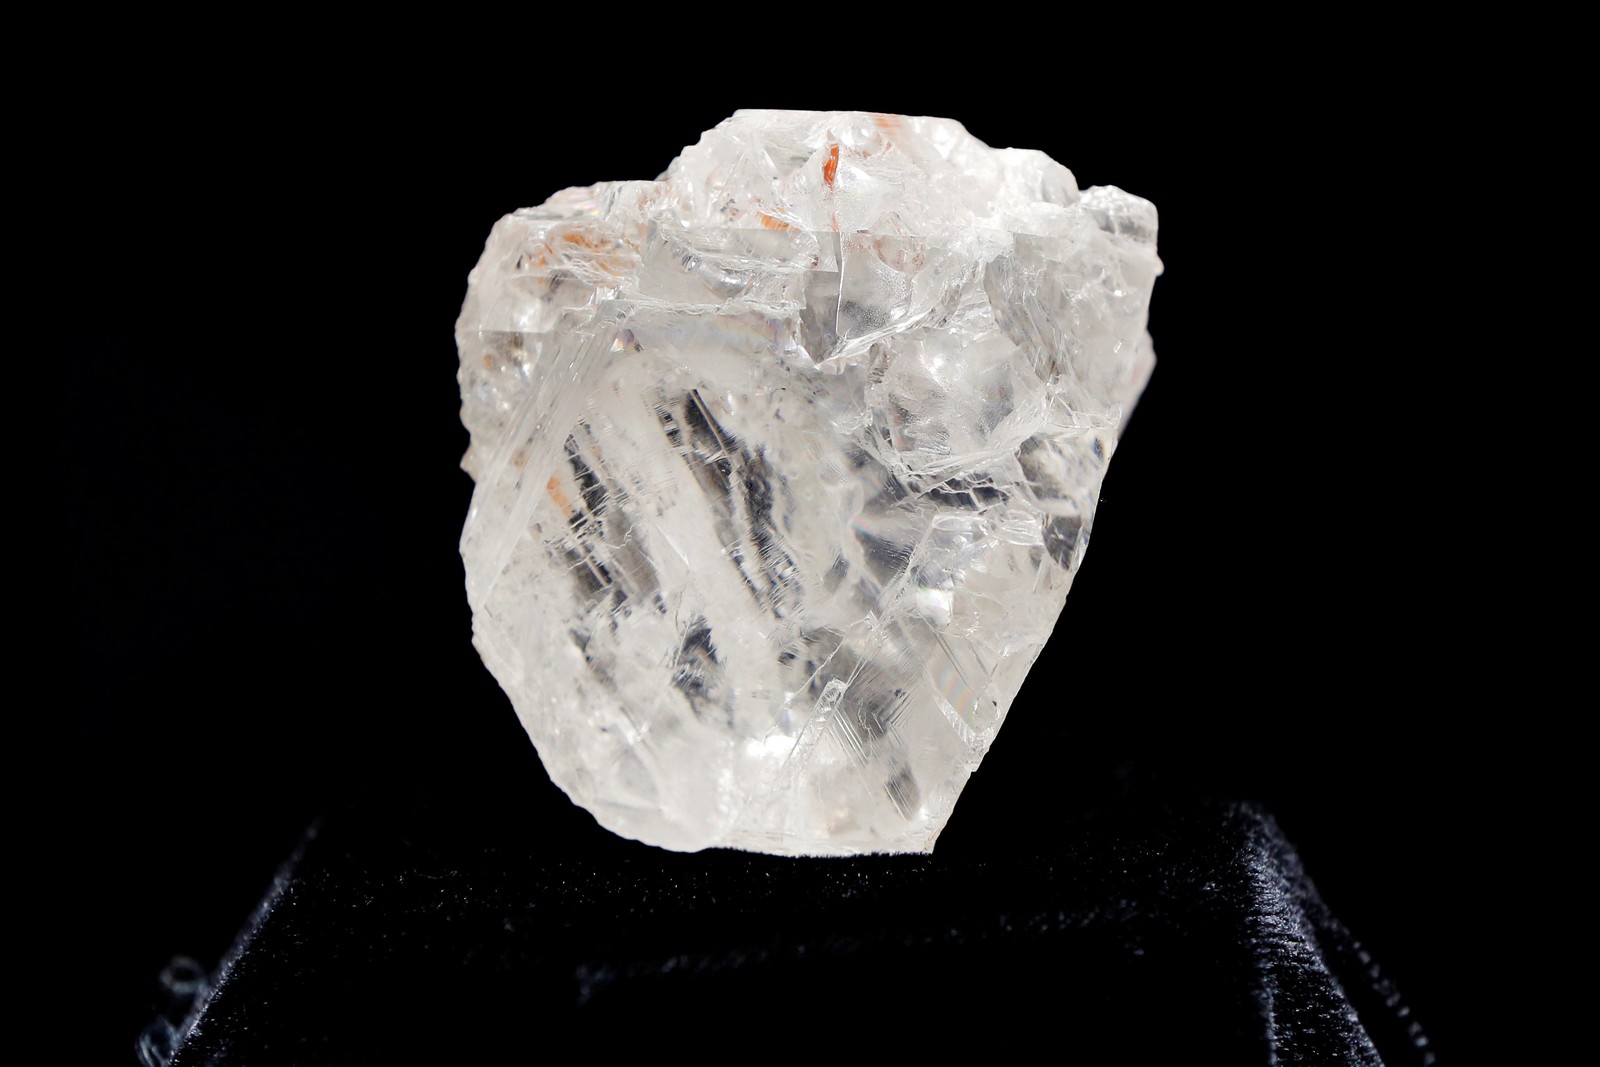 Foto de arquivo do maior diamante do mundo em estado bruto, vendido pela Lucara (Foto: Reuters/Lucas Jackson)